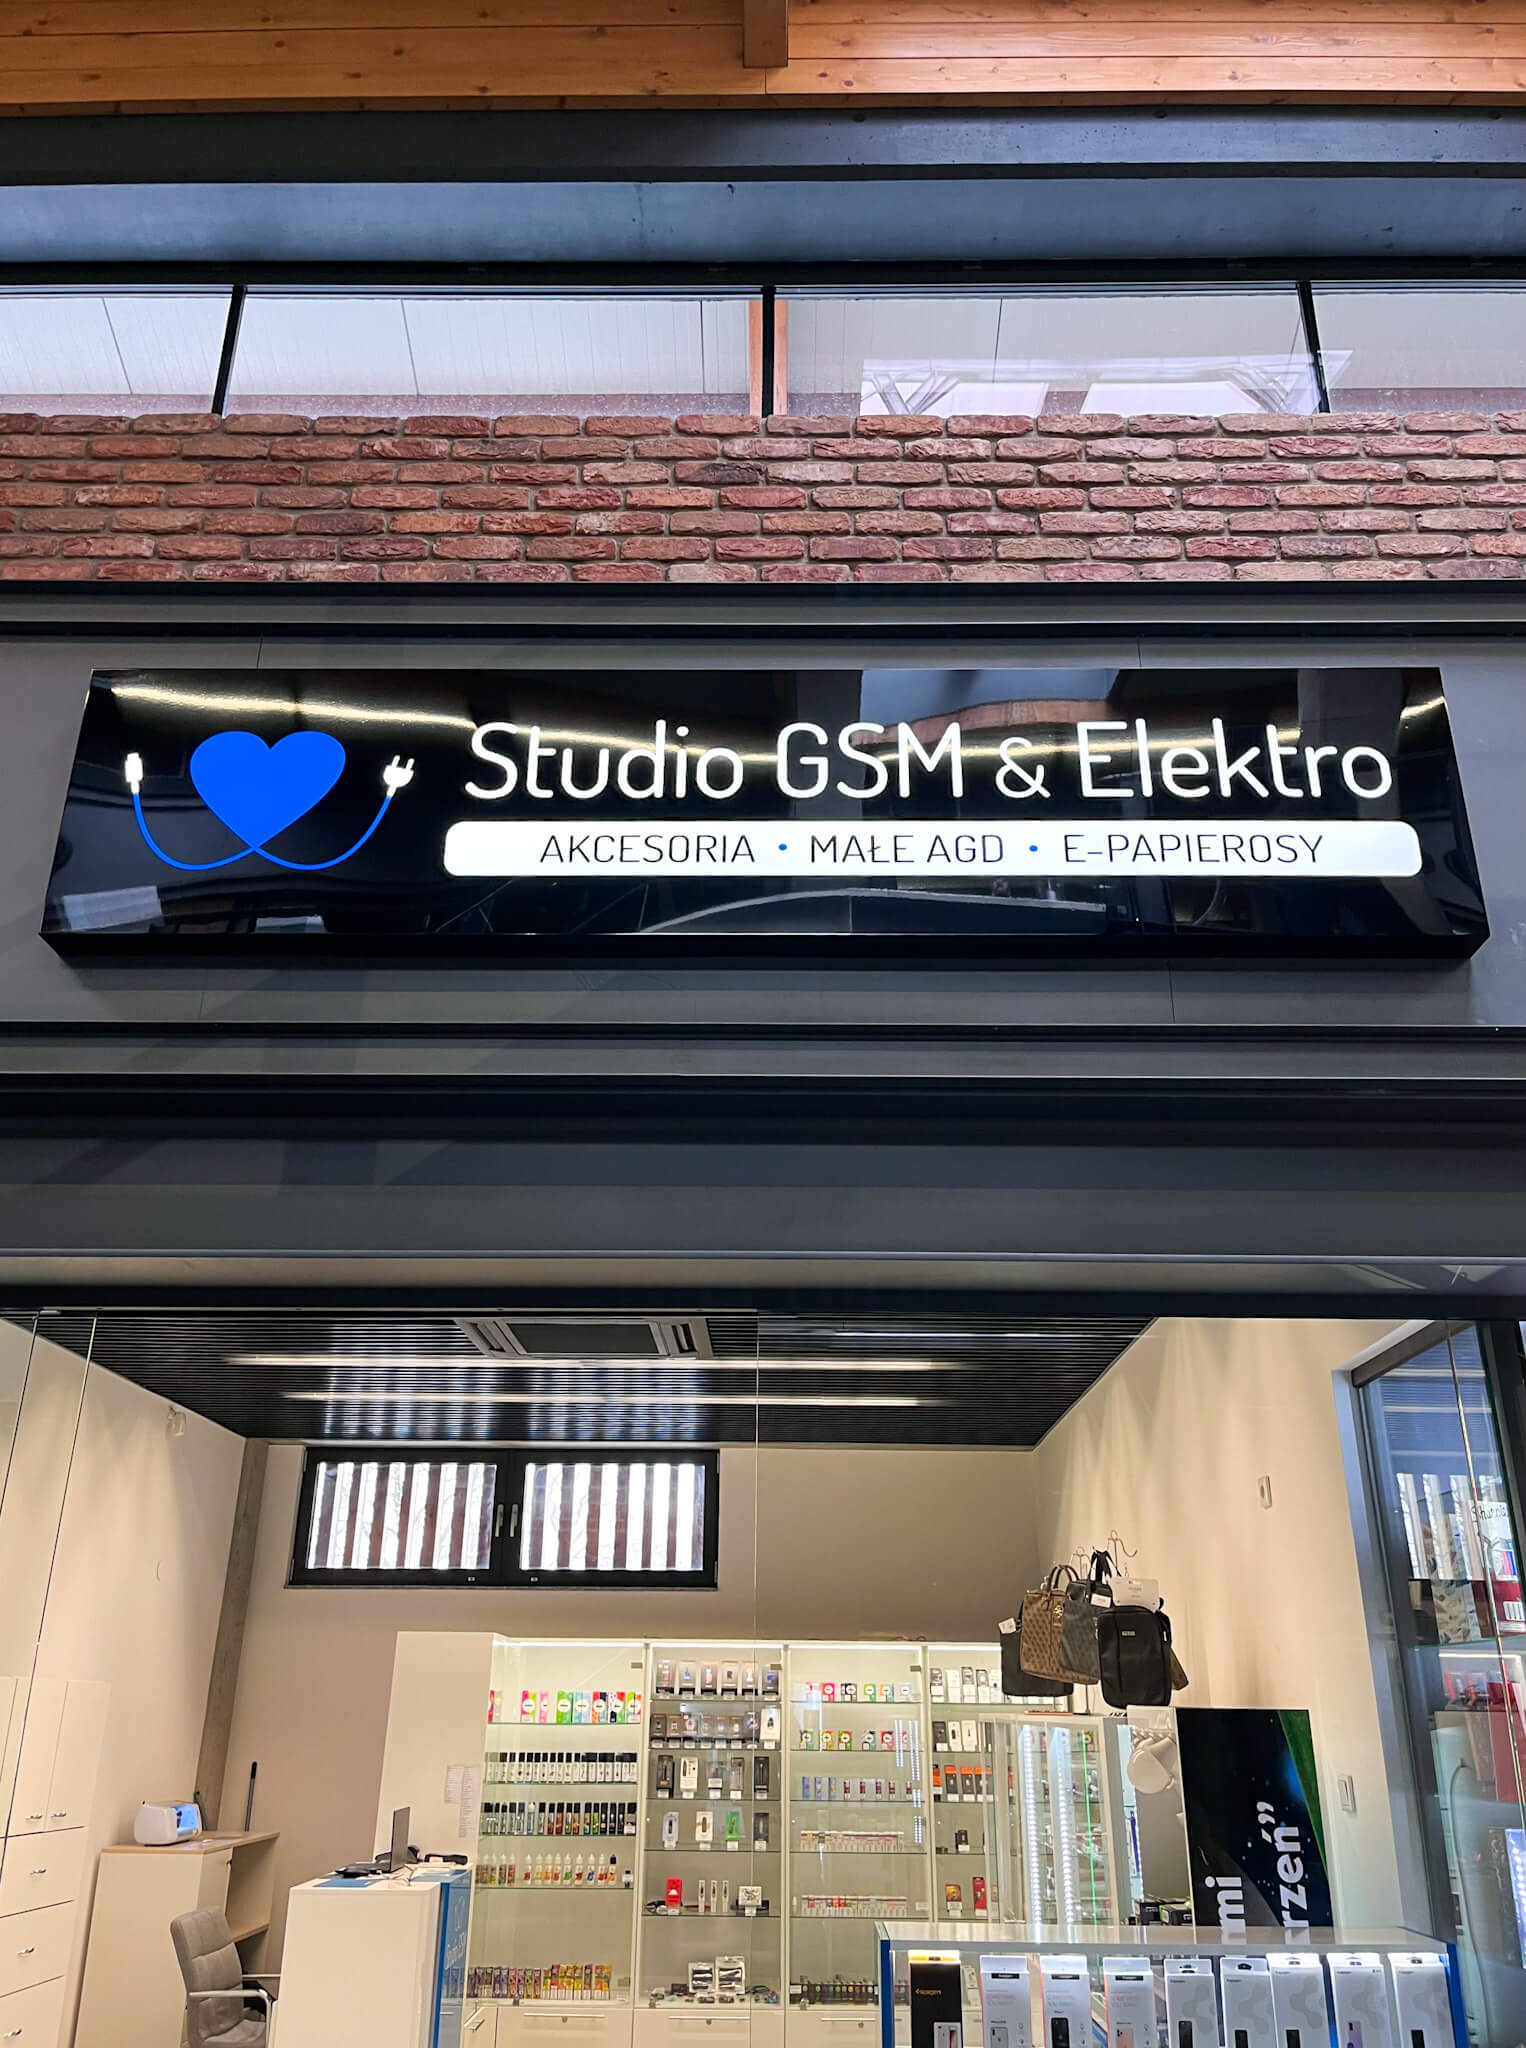 Studio GSM & ELEKTRO & E-PAPIEROSY